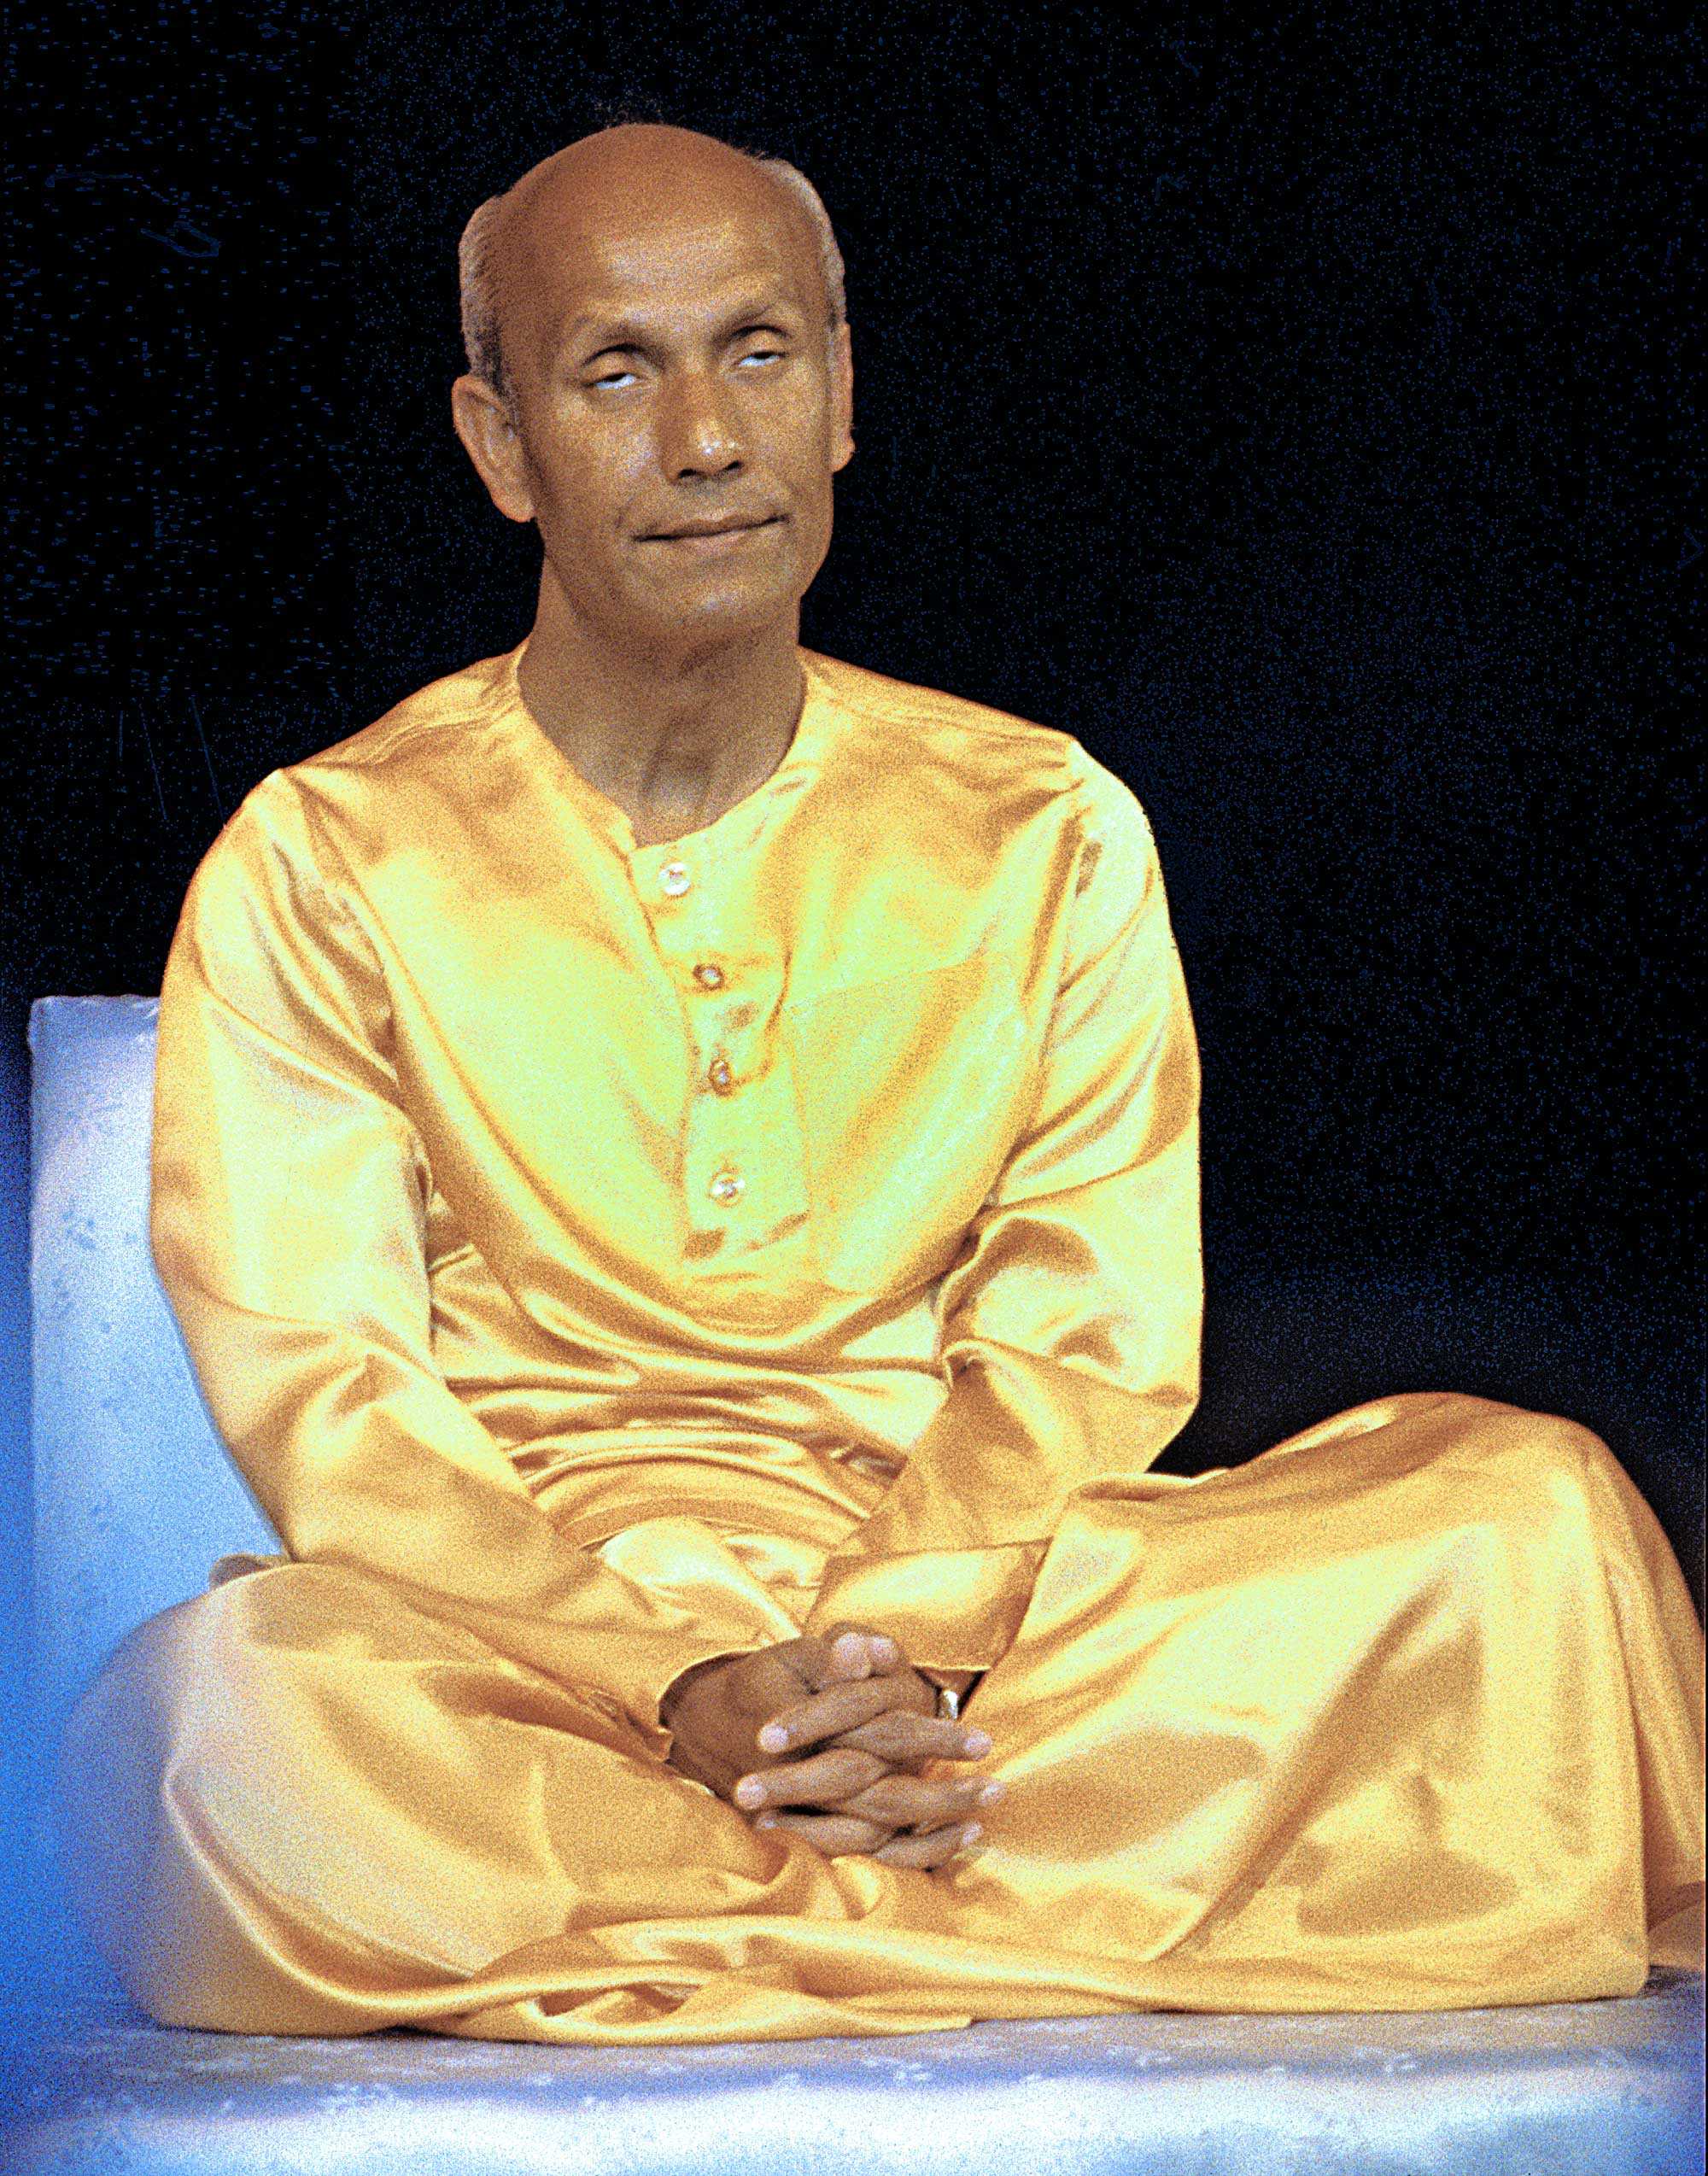 Запись медитаций. Шри Чинмой самадхи. Сахаджа самадхи. Асампраджнята самадхи.